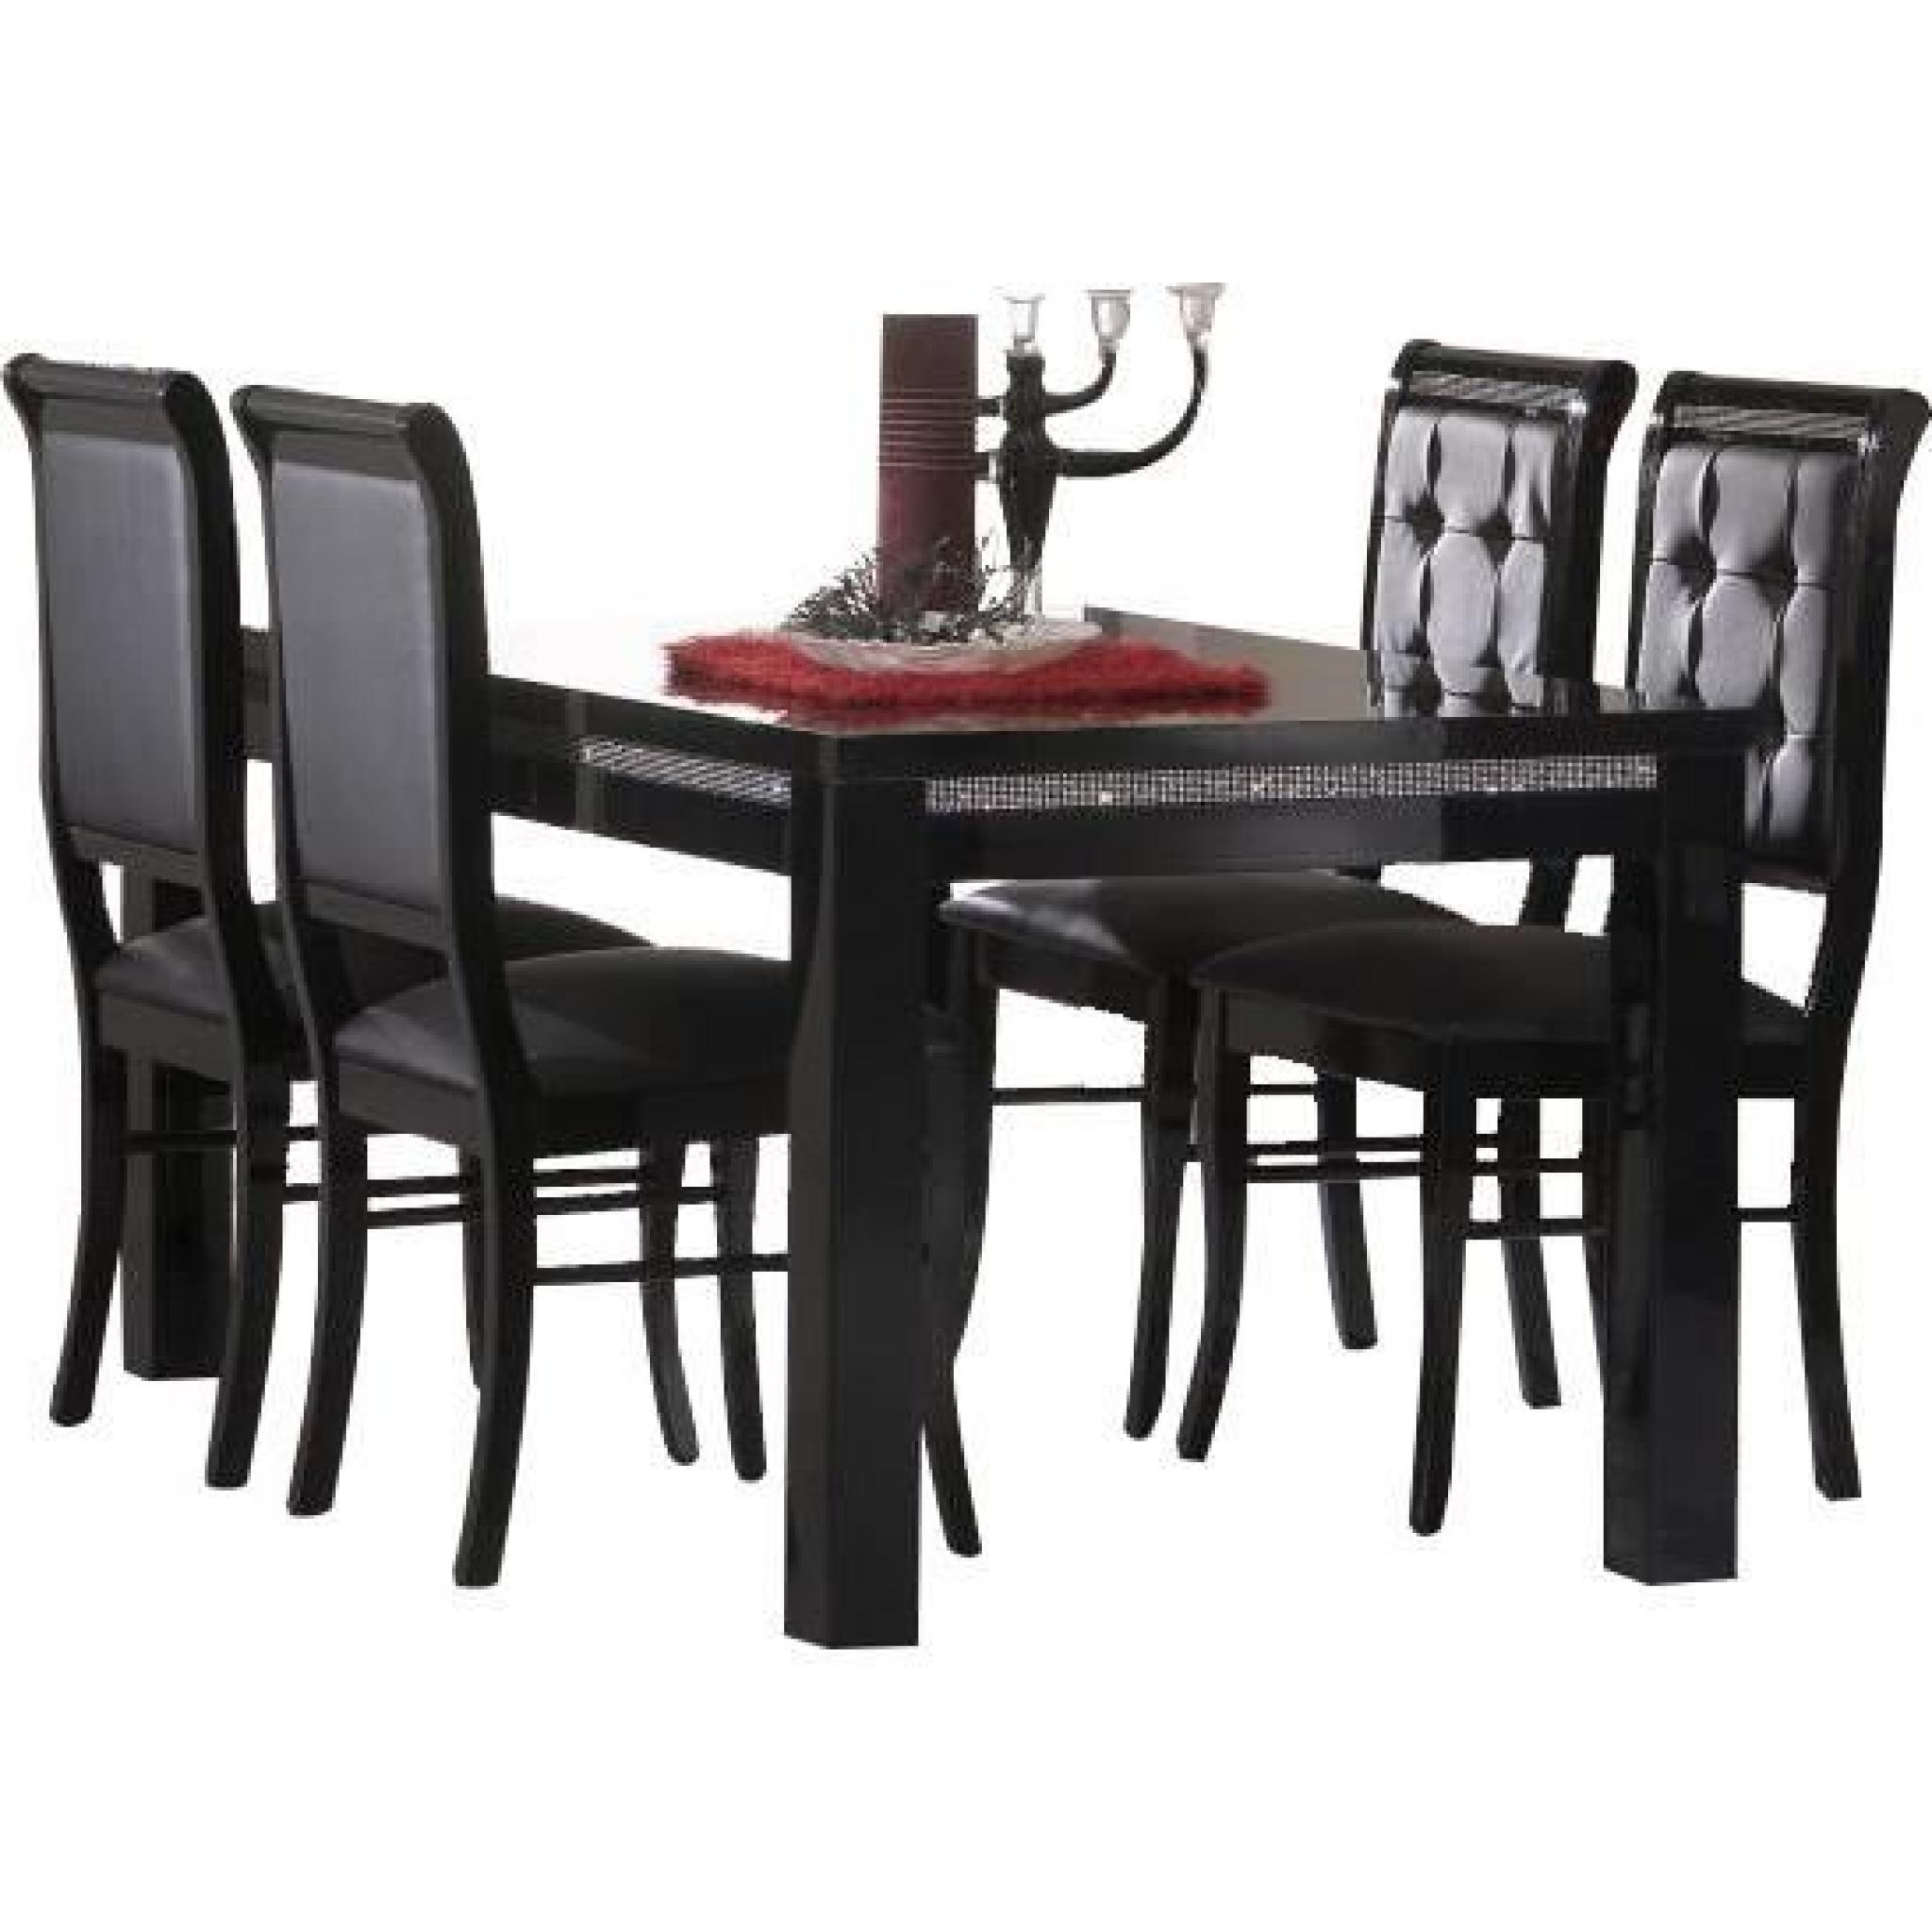 Table à manger 190 cm noir + 4 chaises ultra design noir modele Prestige noir 